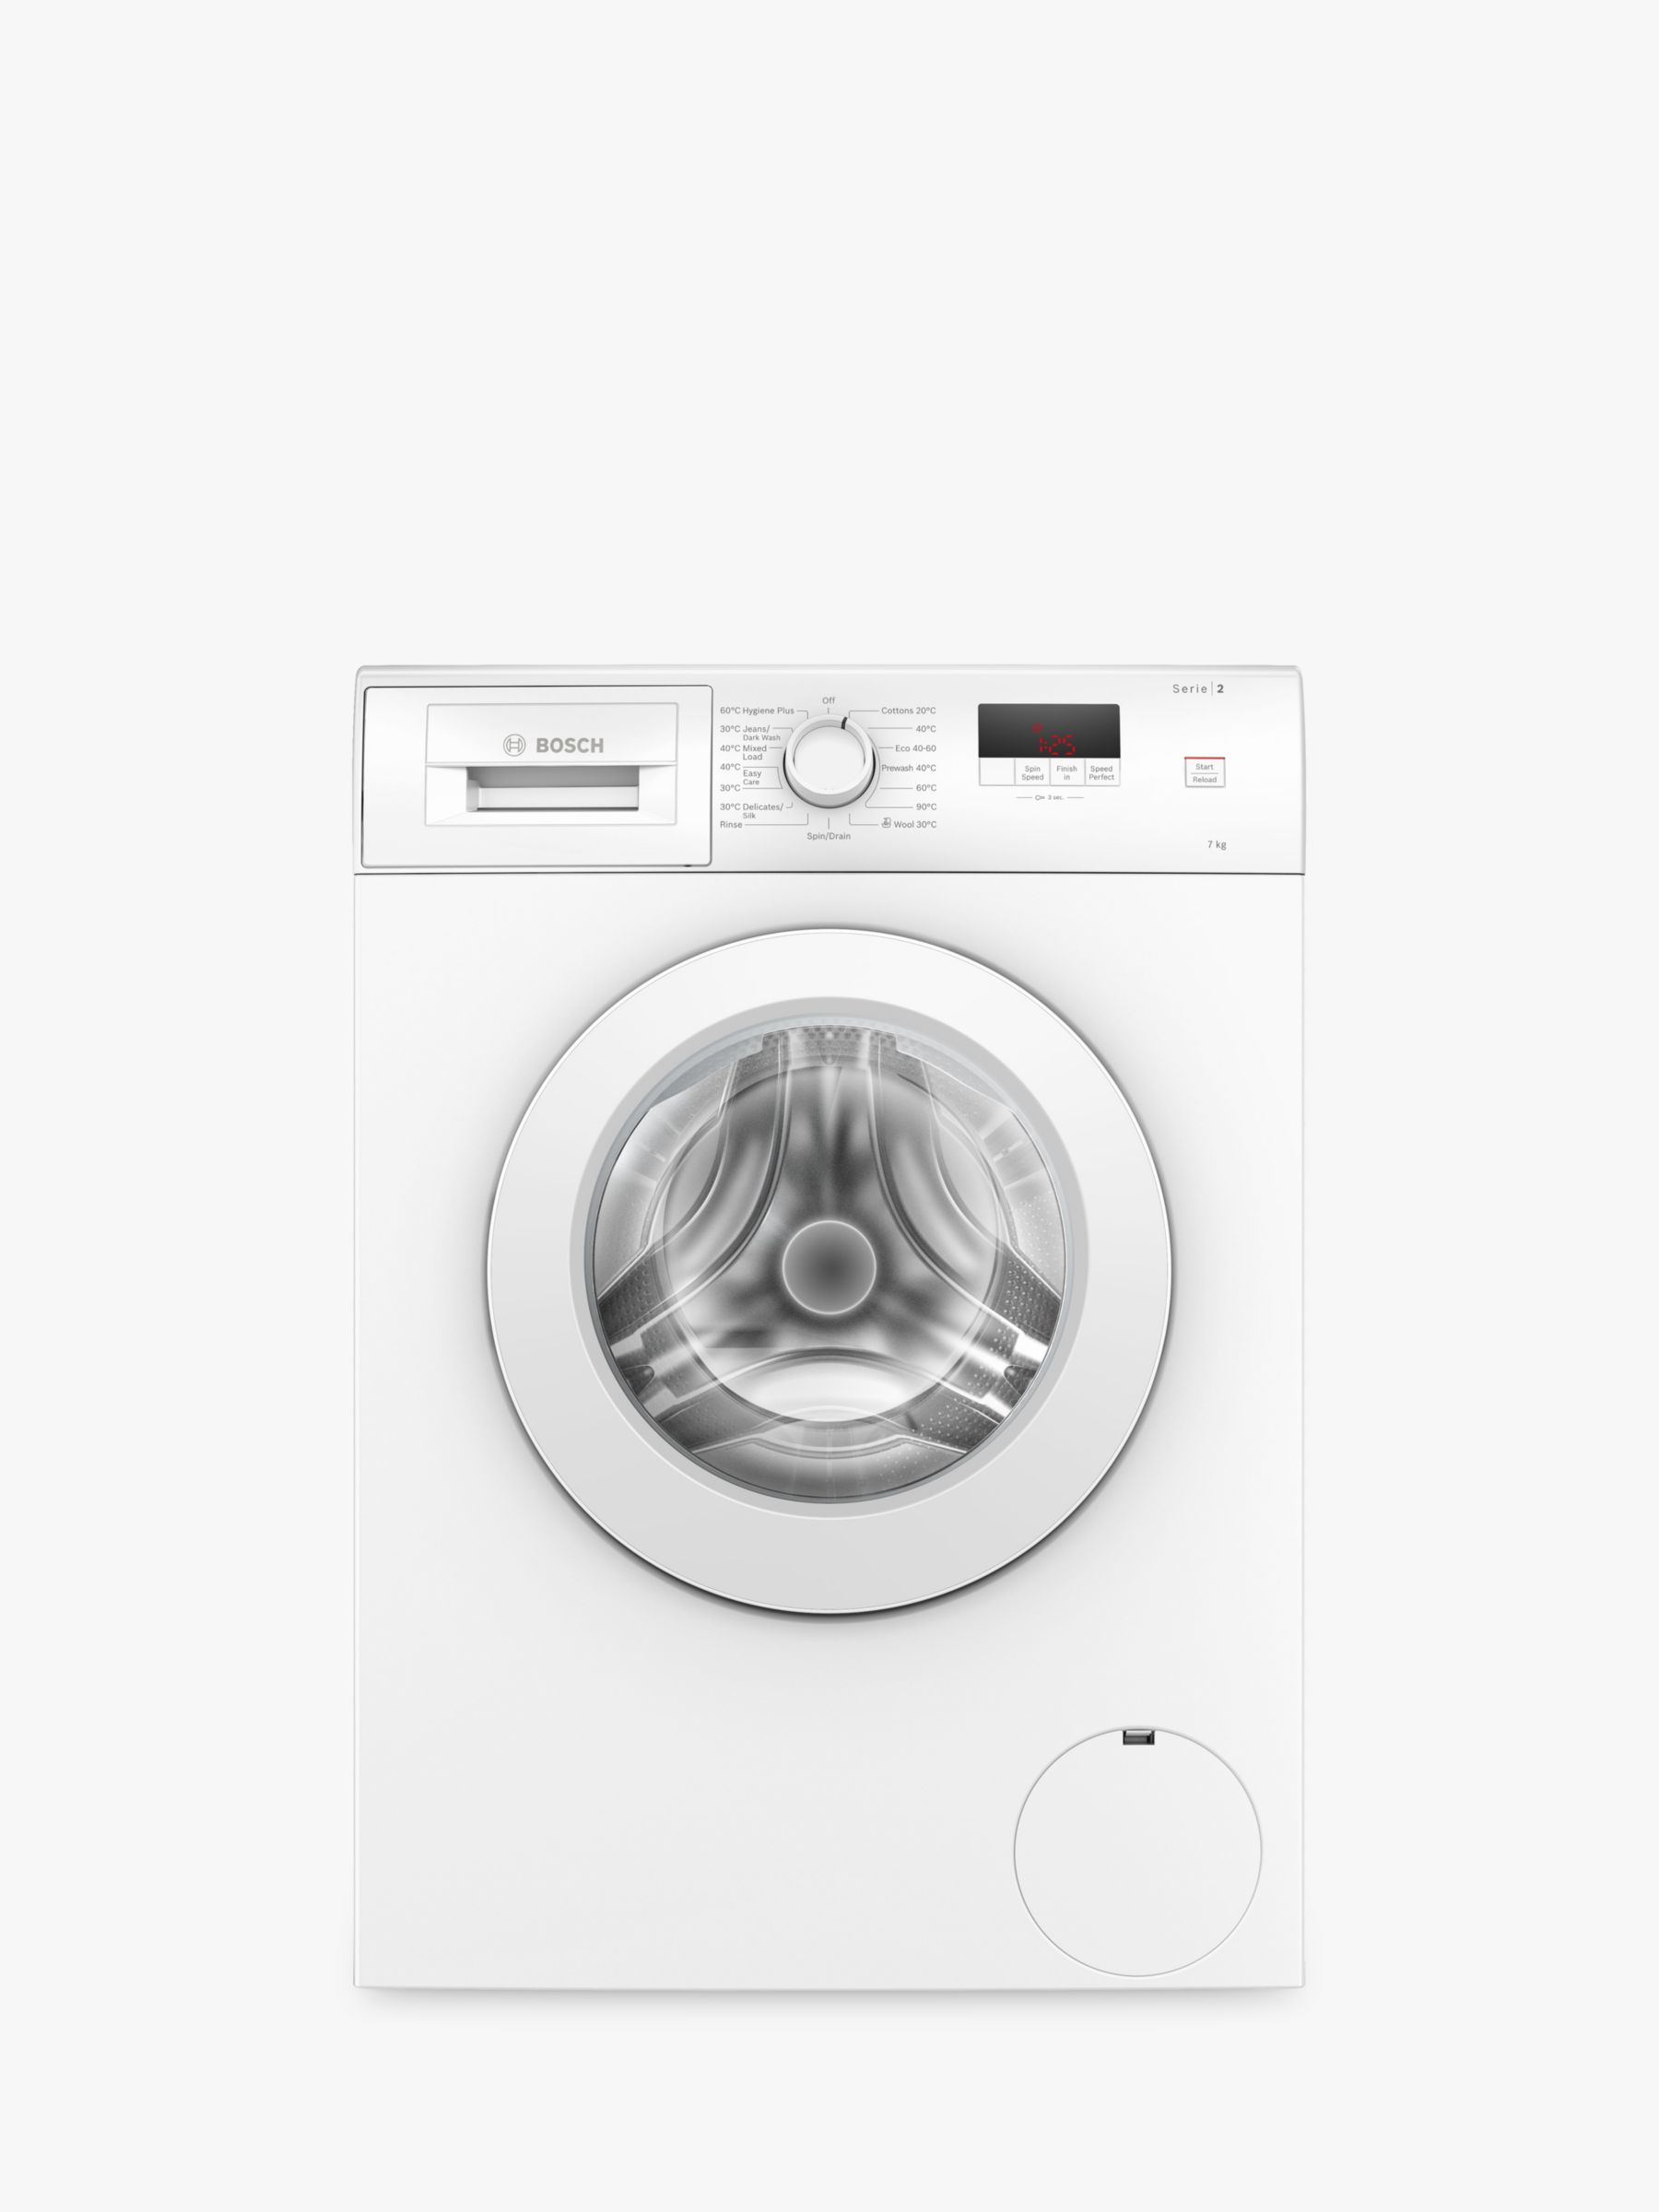 Bosch Washing Machines | John Lewis